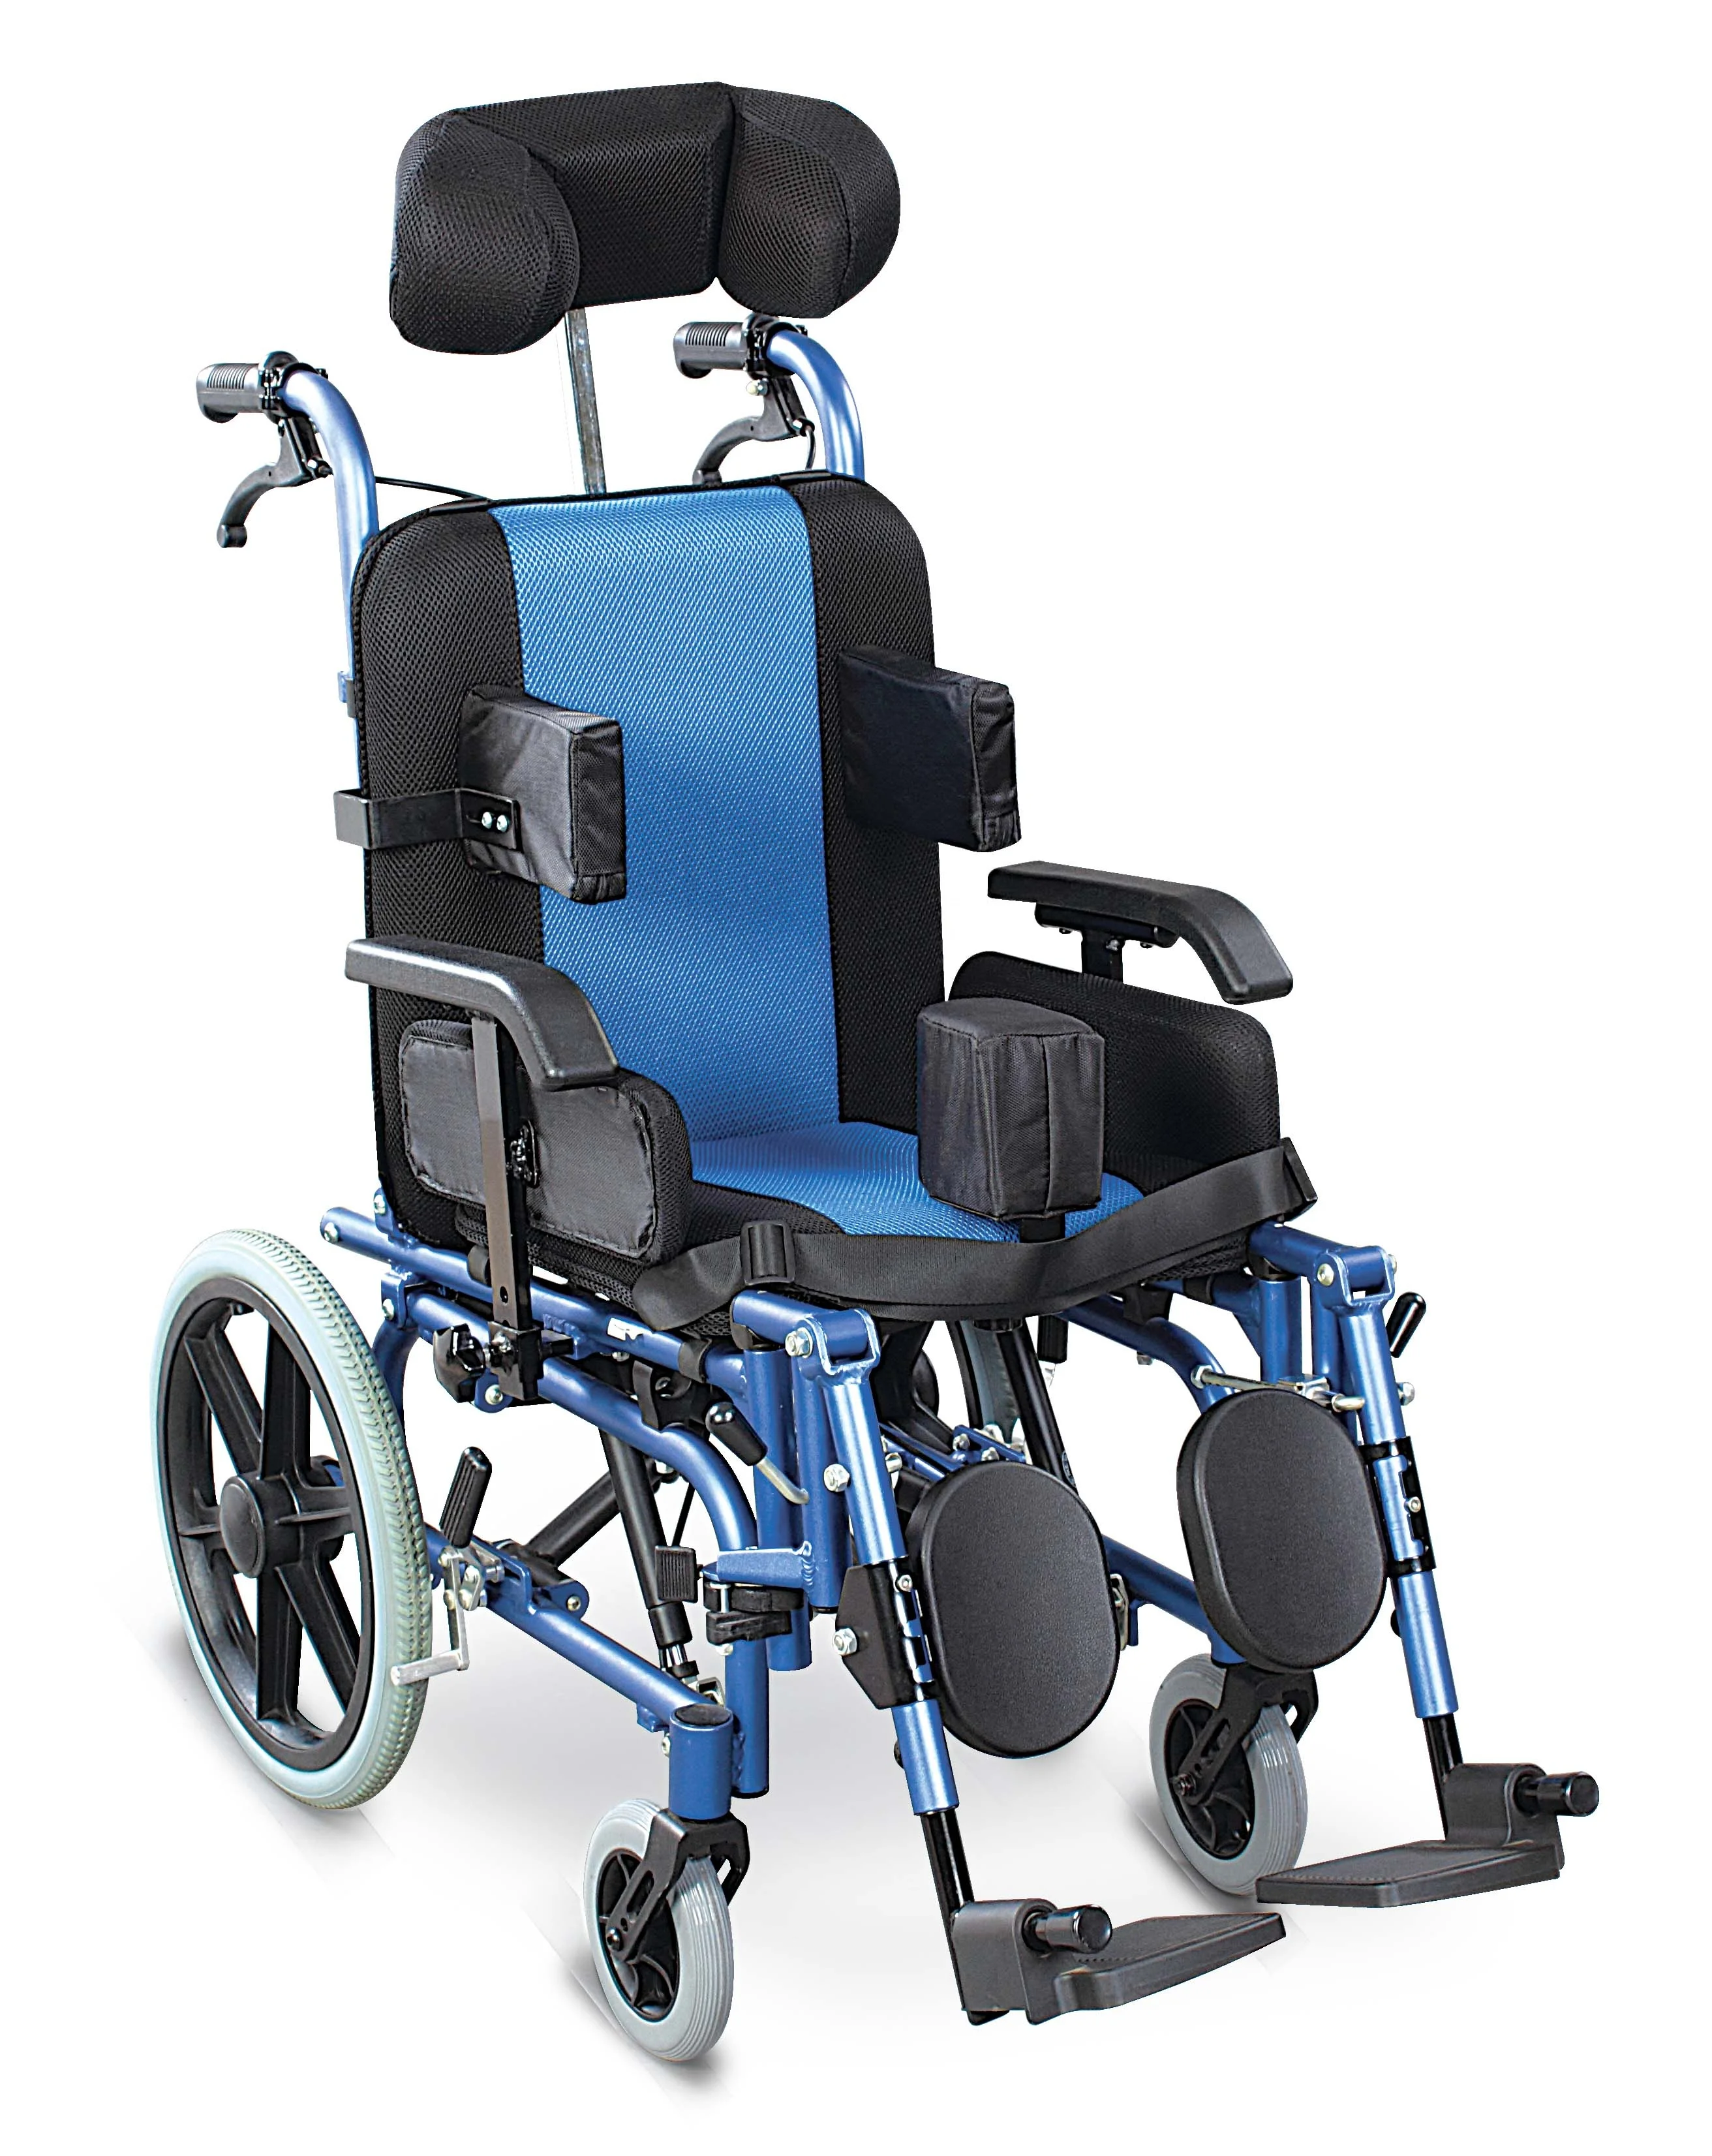 Сиденье для дцп. Коляска ДЦП инвалидная Ортоника. Ortonica кресло-коляска для детей ДЦП. Ортоника коляска для детей с ДЦП. Коляска инвалидная активного типа Ортоника для детей с ДЦП.